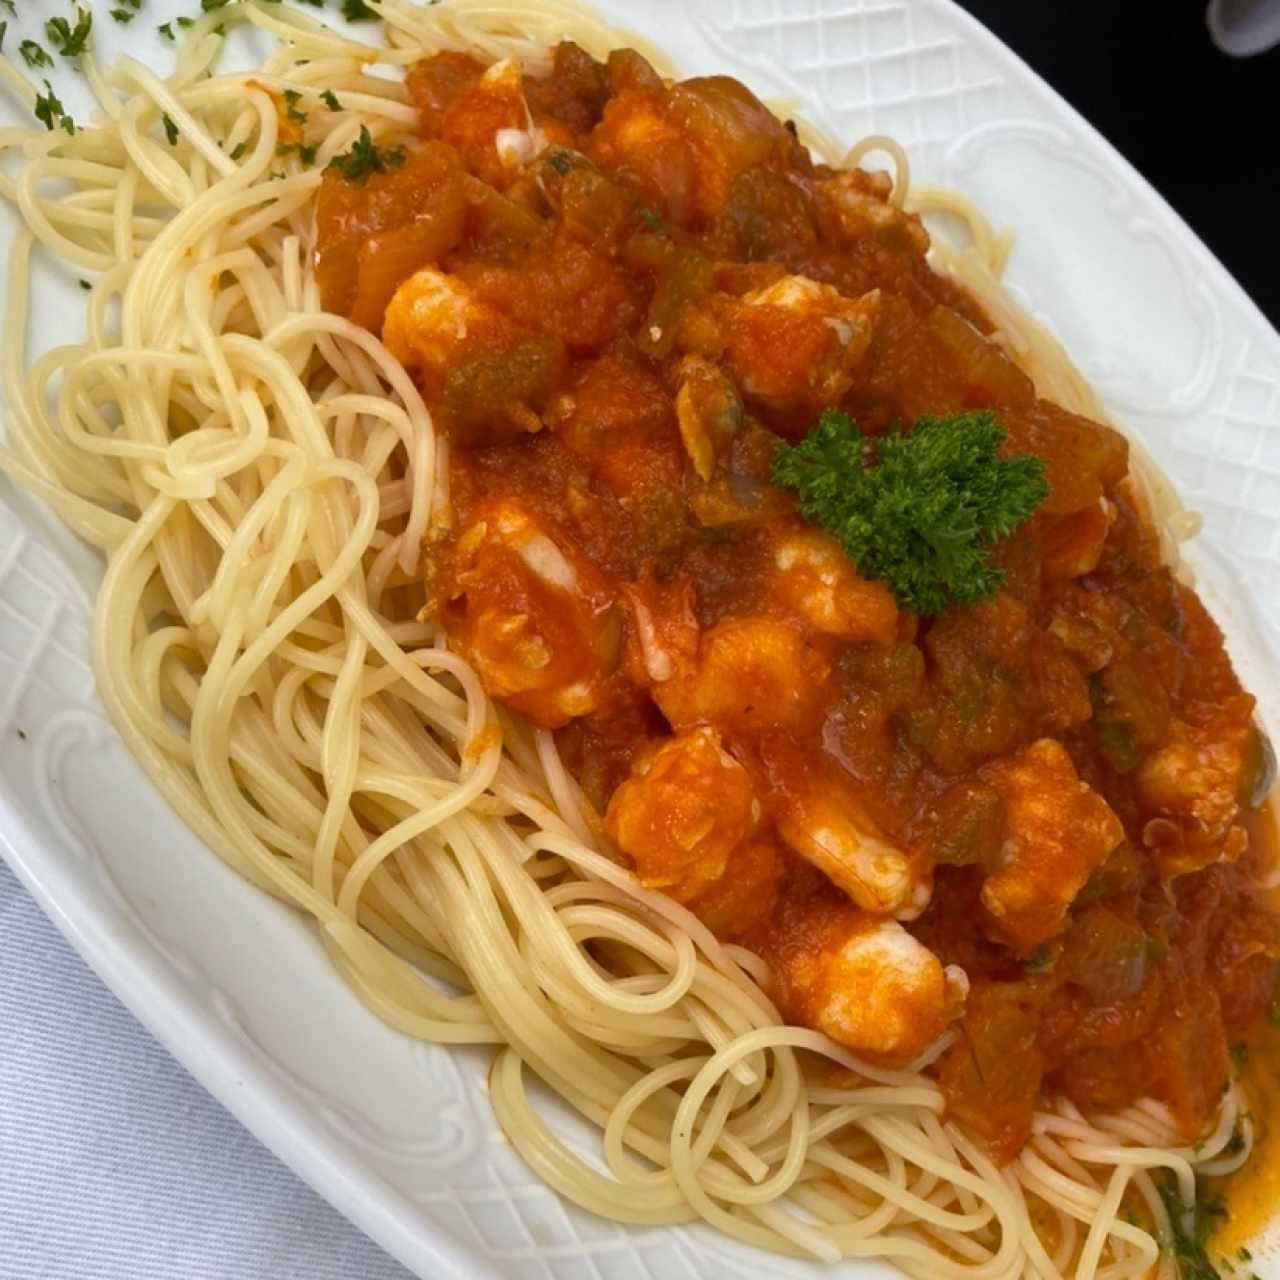 Spaguetti con salsa roja de langostinos y almejas